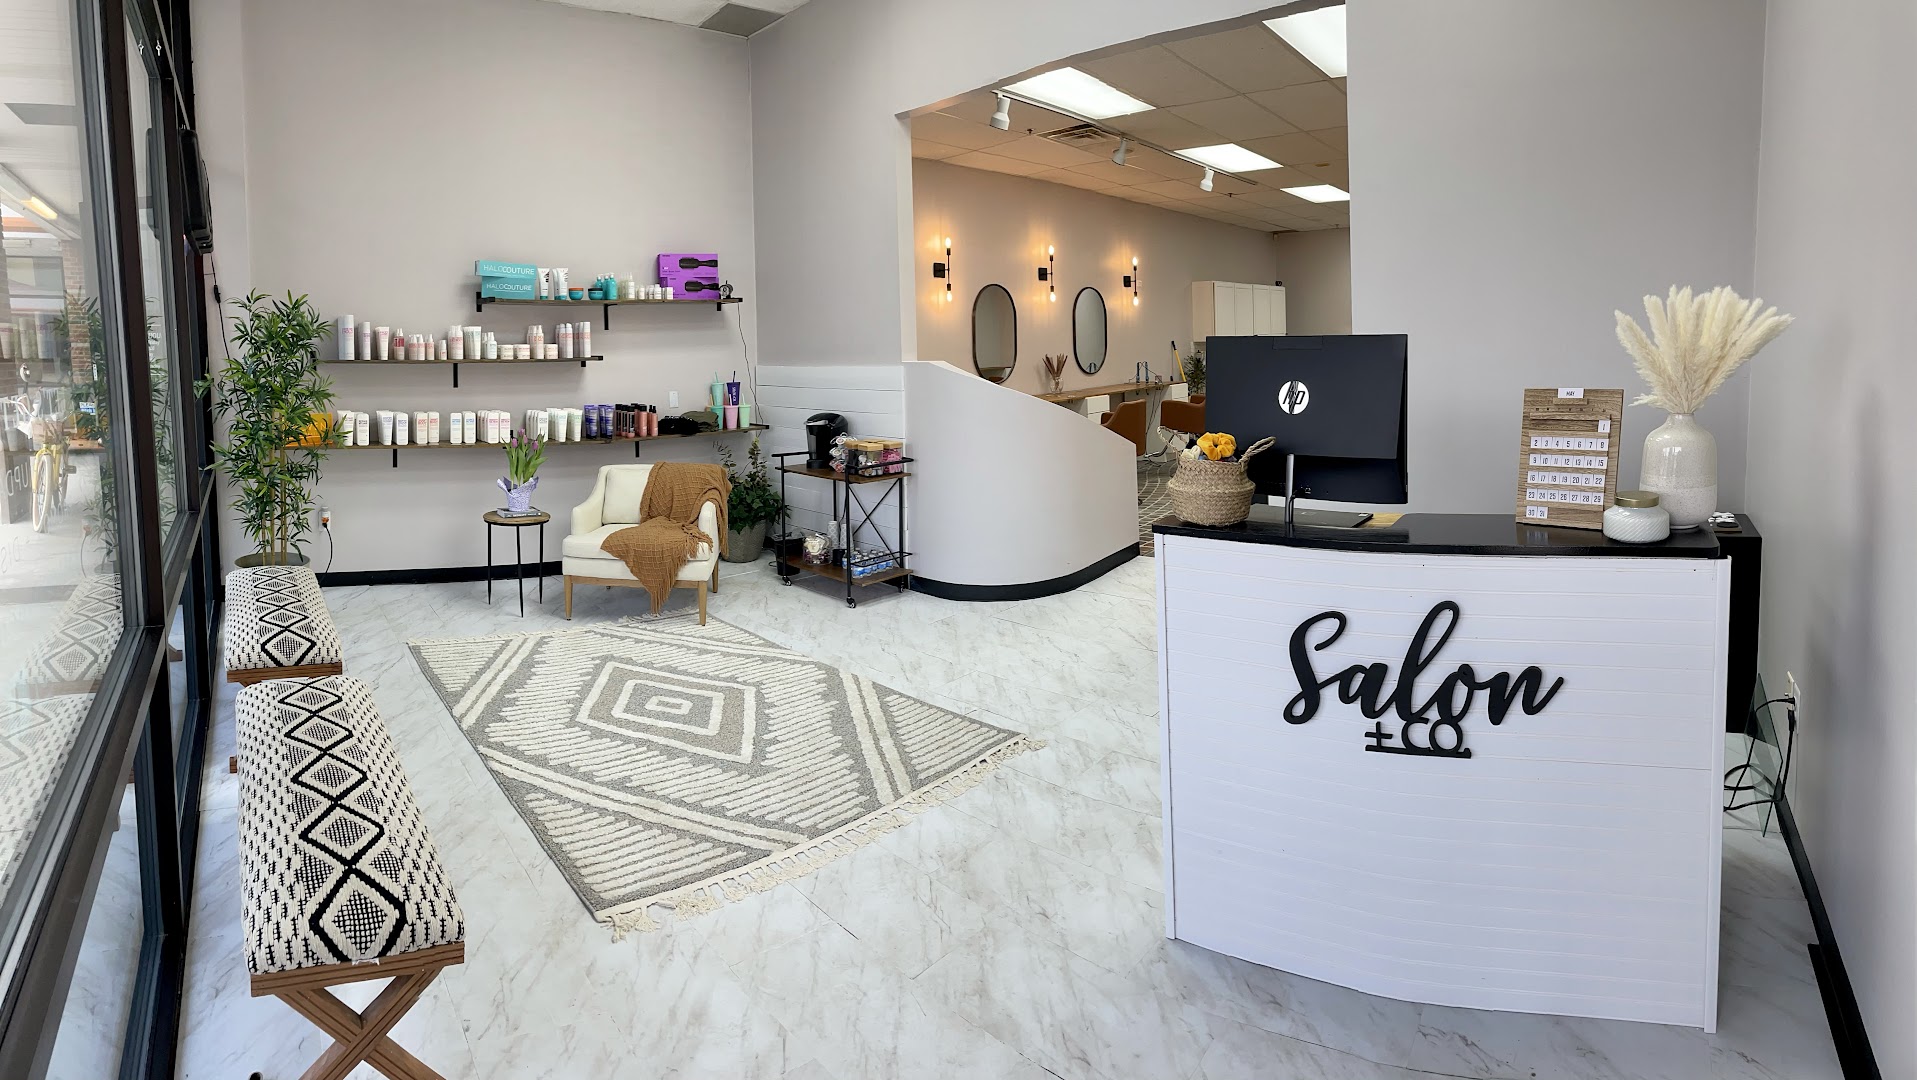 Salon & Co Shelby